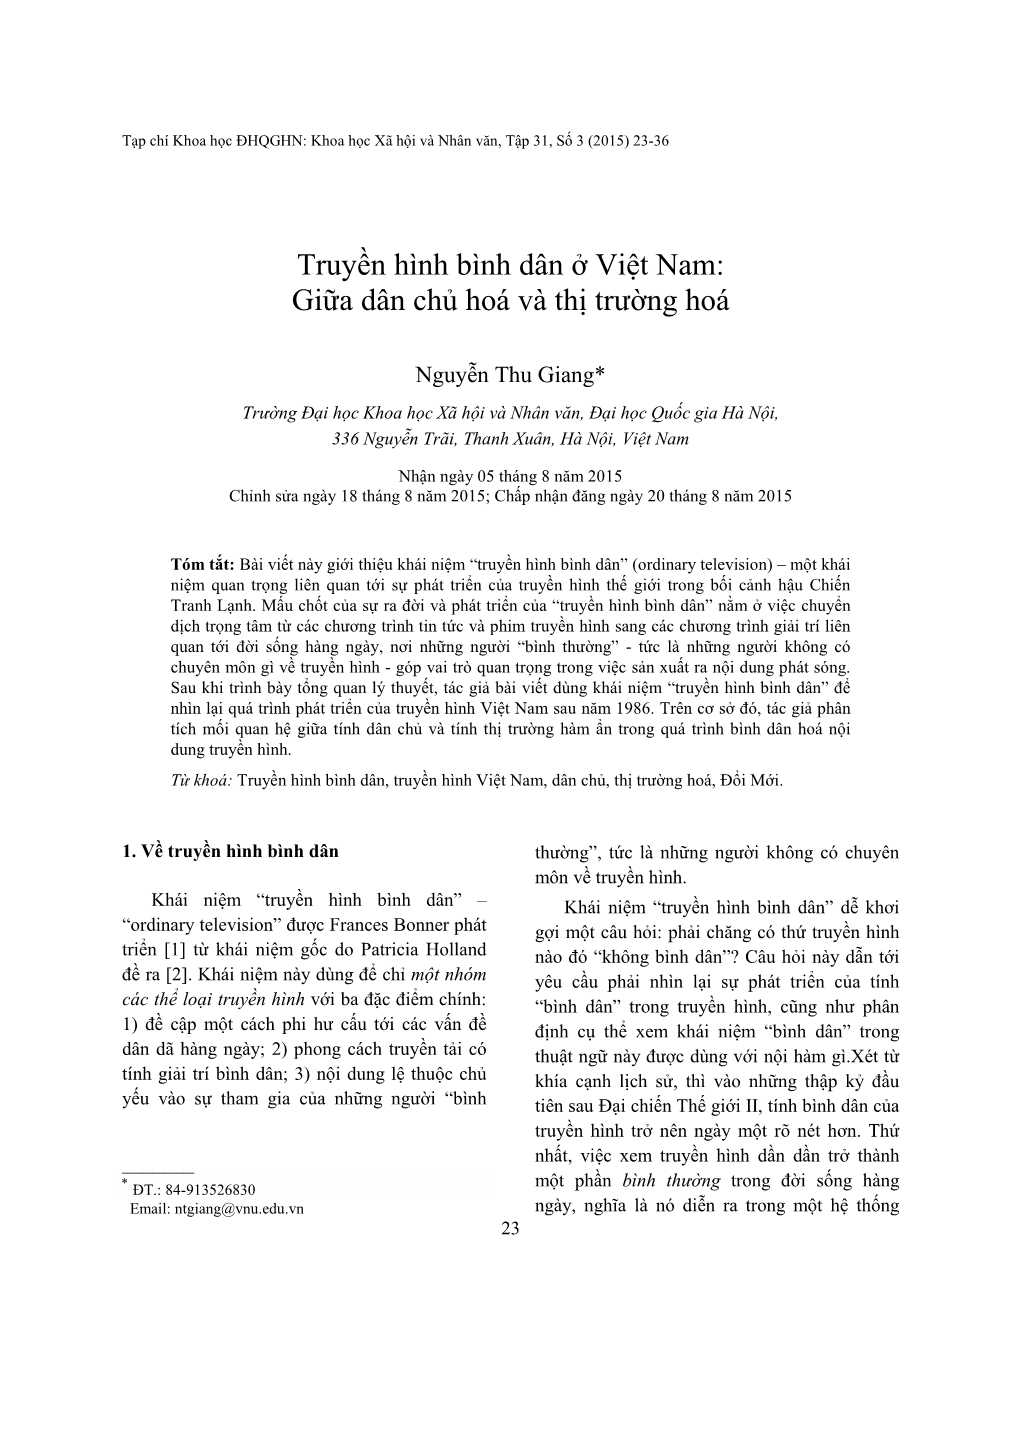 Truyền Hình Bình Dân Ở Việt Nam: Giữa Dân Chủ Hoá Và Thị Trường Hoá